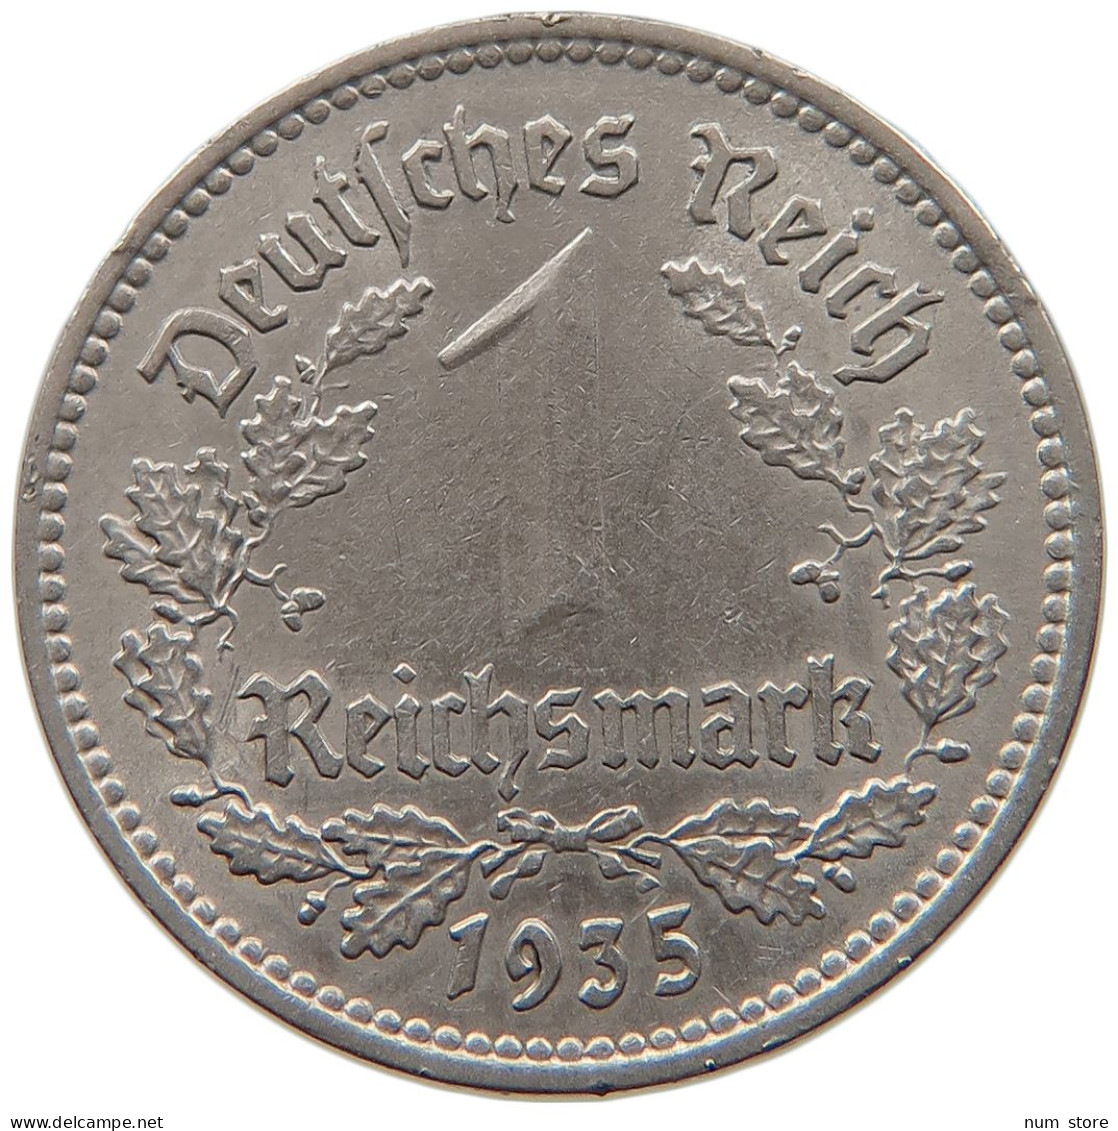 DRITTES REICH MARK 1935 A  #MA 099353 - 1 Reichsmark